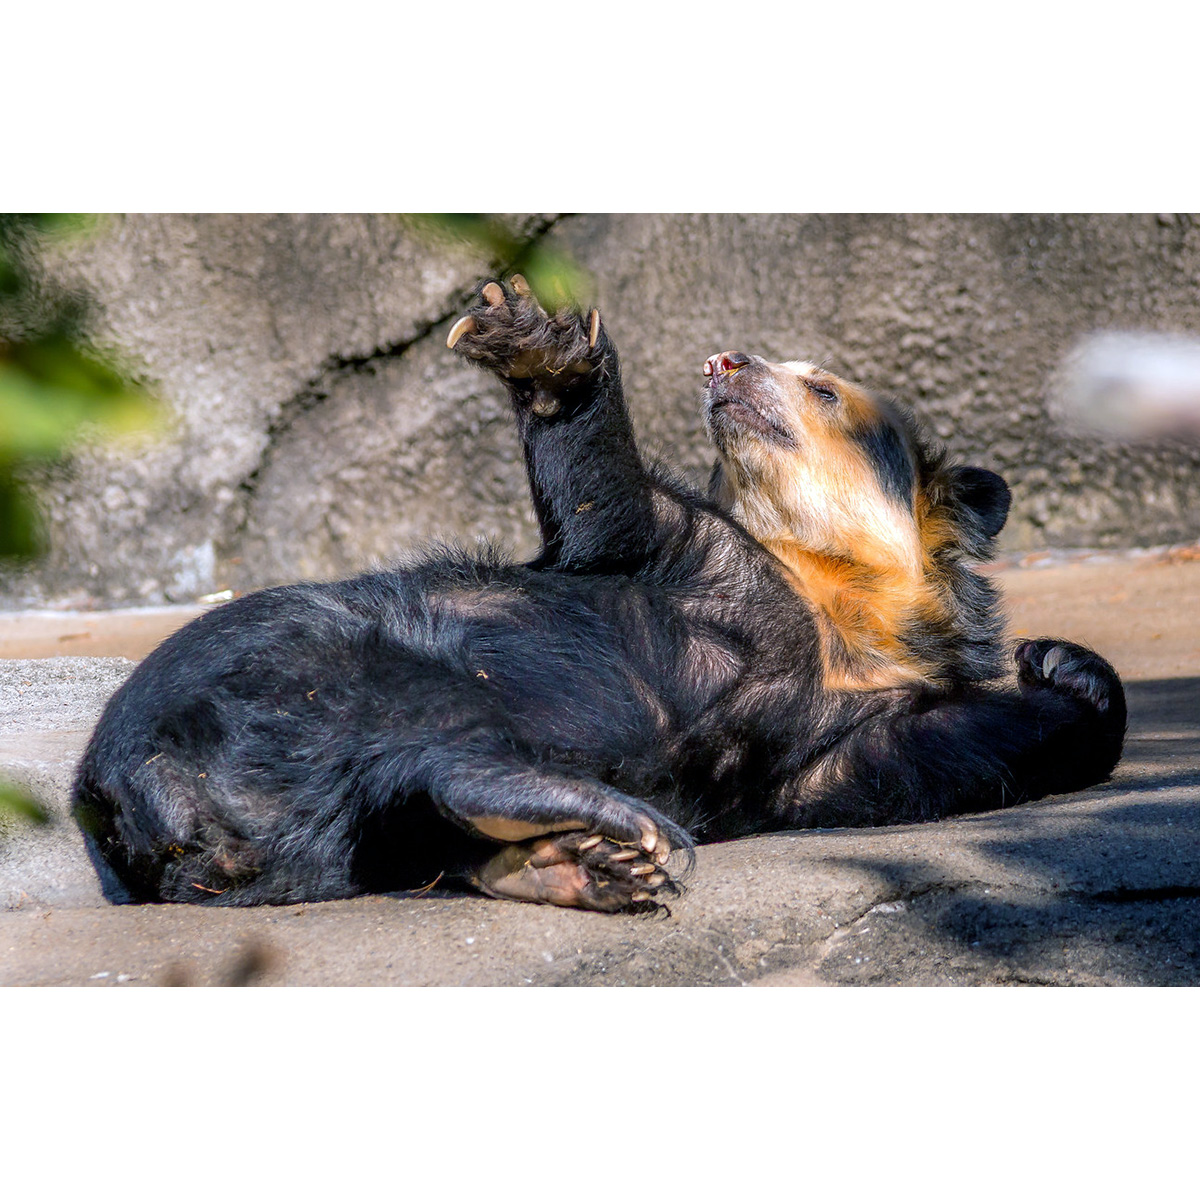 Очковый медведь (Tremarctos ornatus) Фото №6